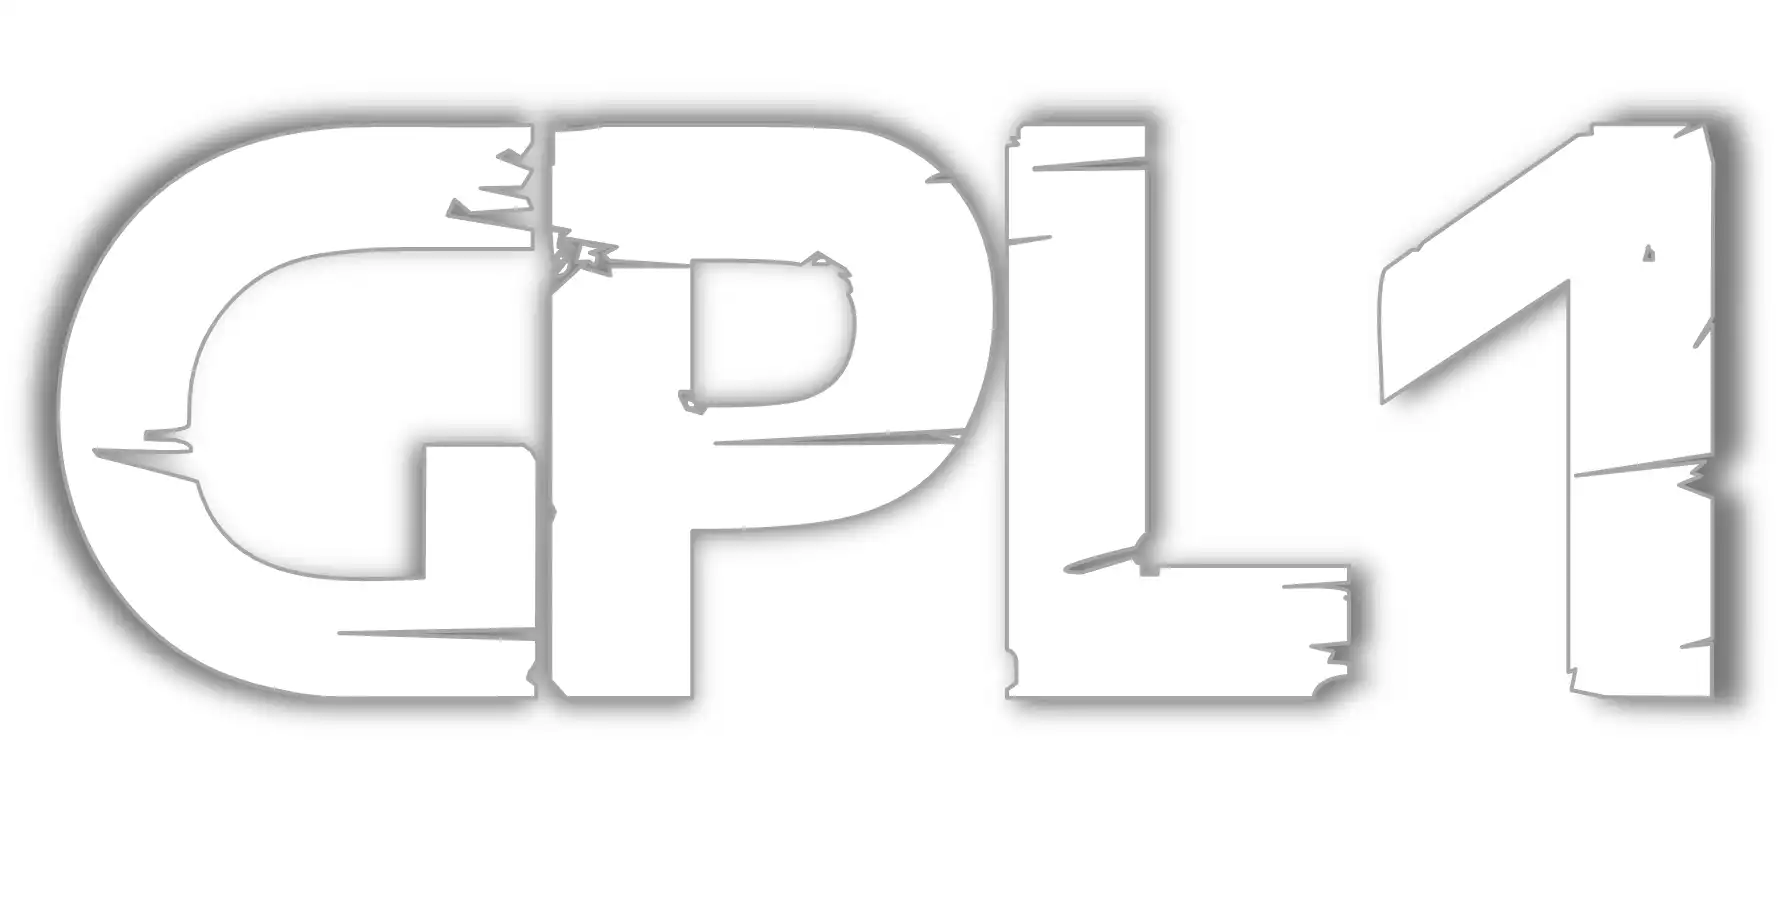 Загрузить веб-инструмент или веб-приложение под лицензией GPL